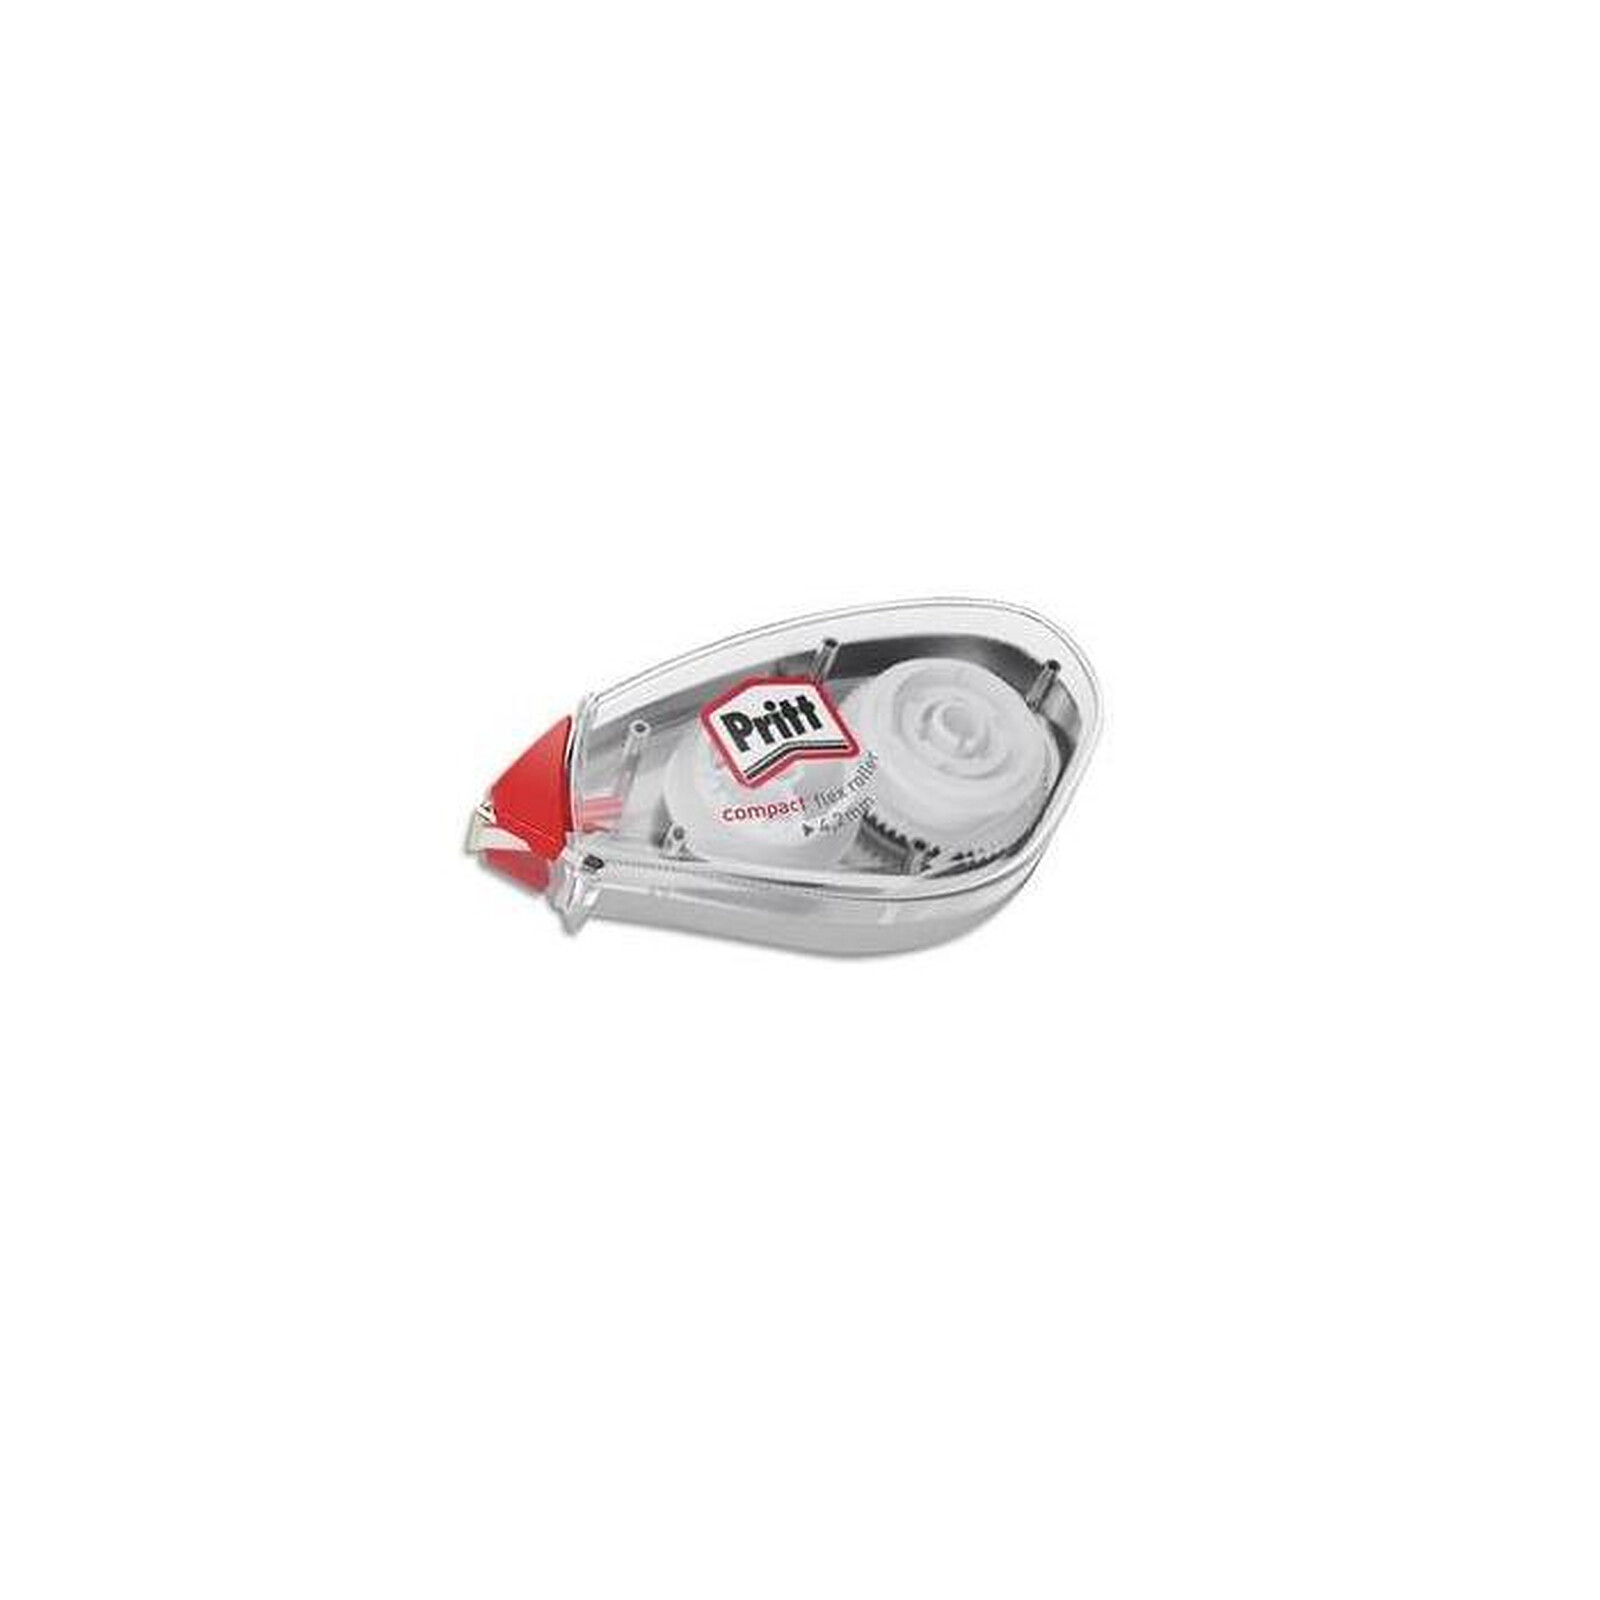 TIPP-EX Roller correcteur 'Mini Pocket Mouse' 5 mm x 6 m x 10 - Correcteur  - LDLC